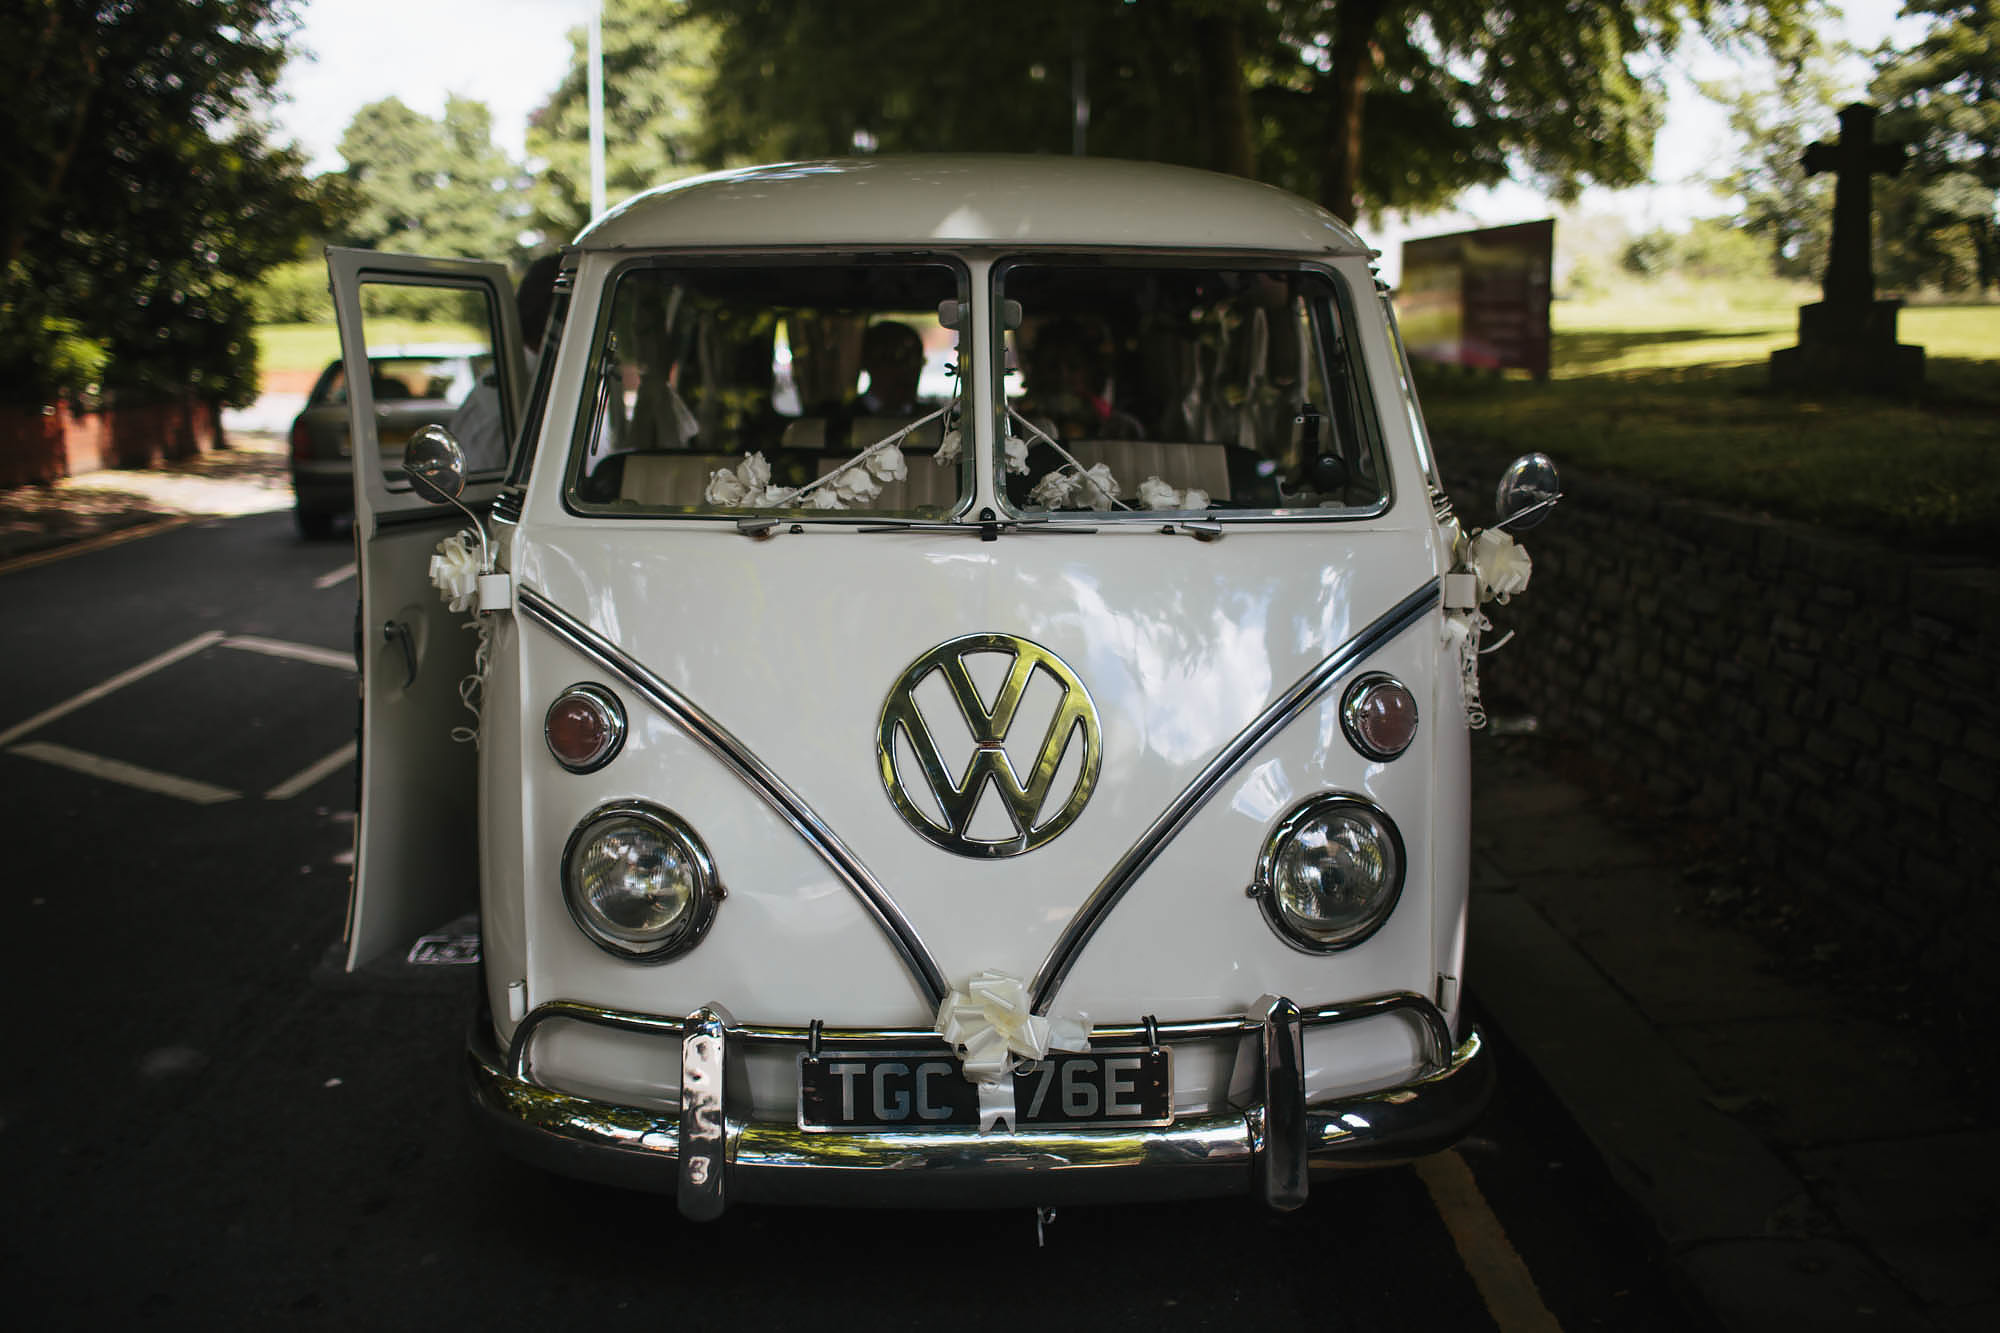 VW camper van brings the bride to her wedding